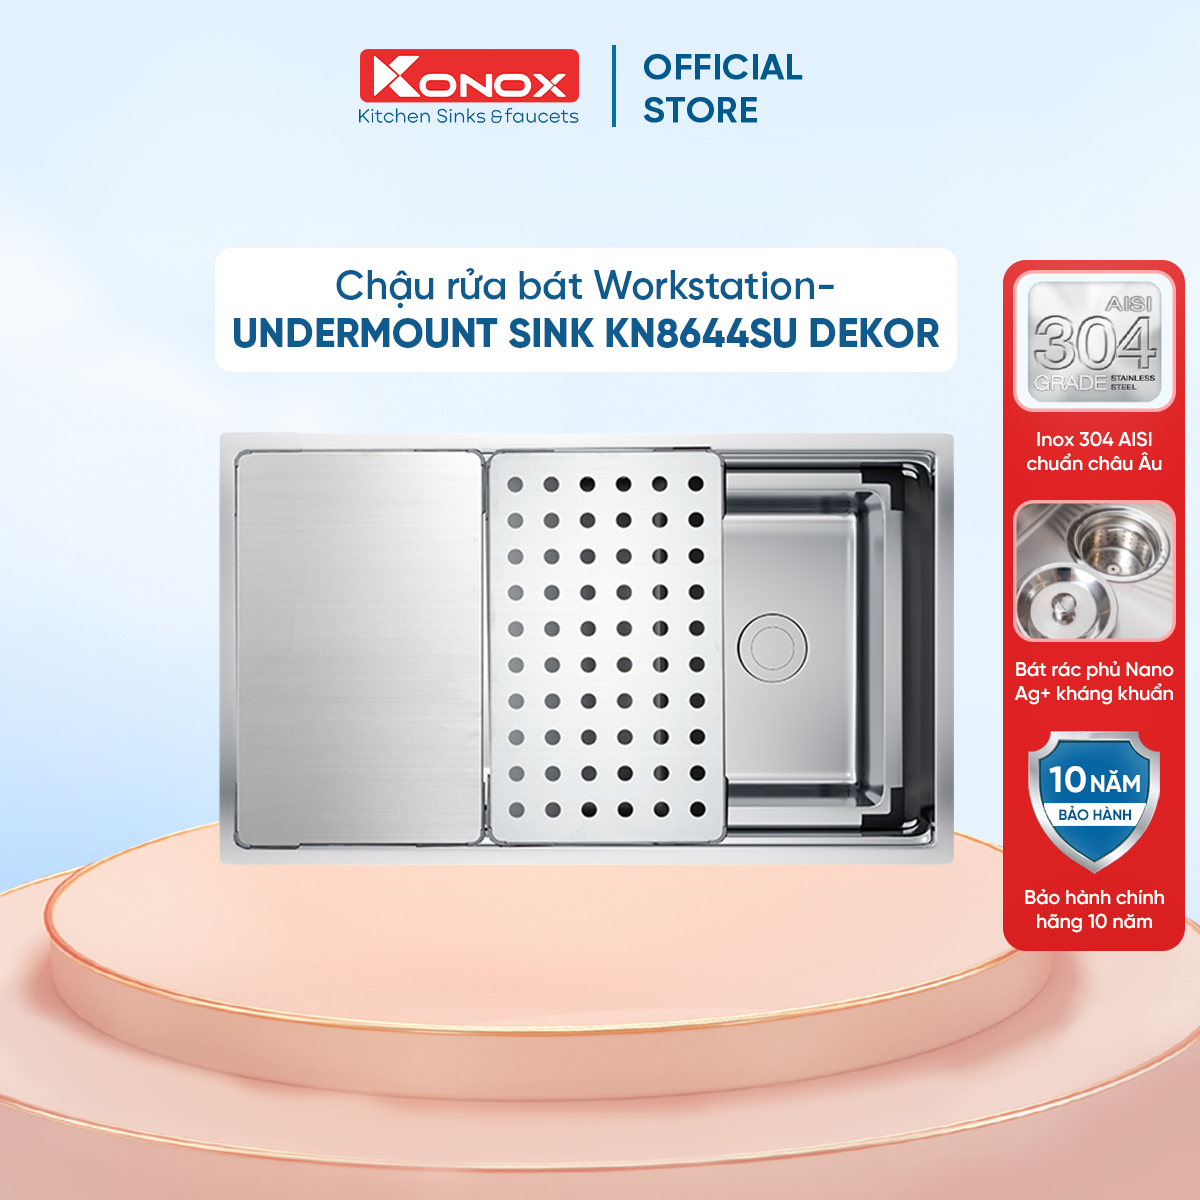 Chậu rửa bát chống xước KONOX Workstation – Undermount Sink KN8644SU Dekor - Bảo hành chính hãng 10 năm